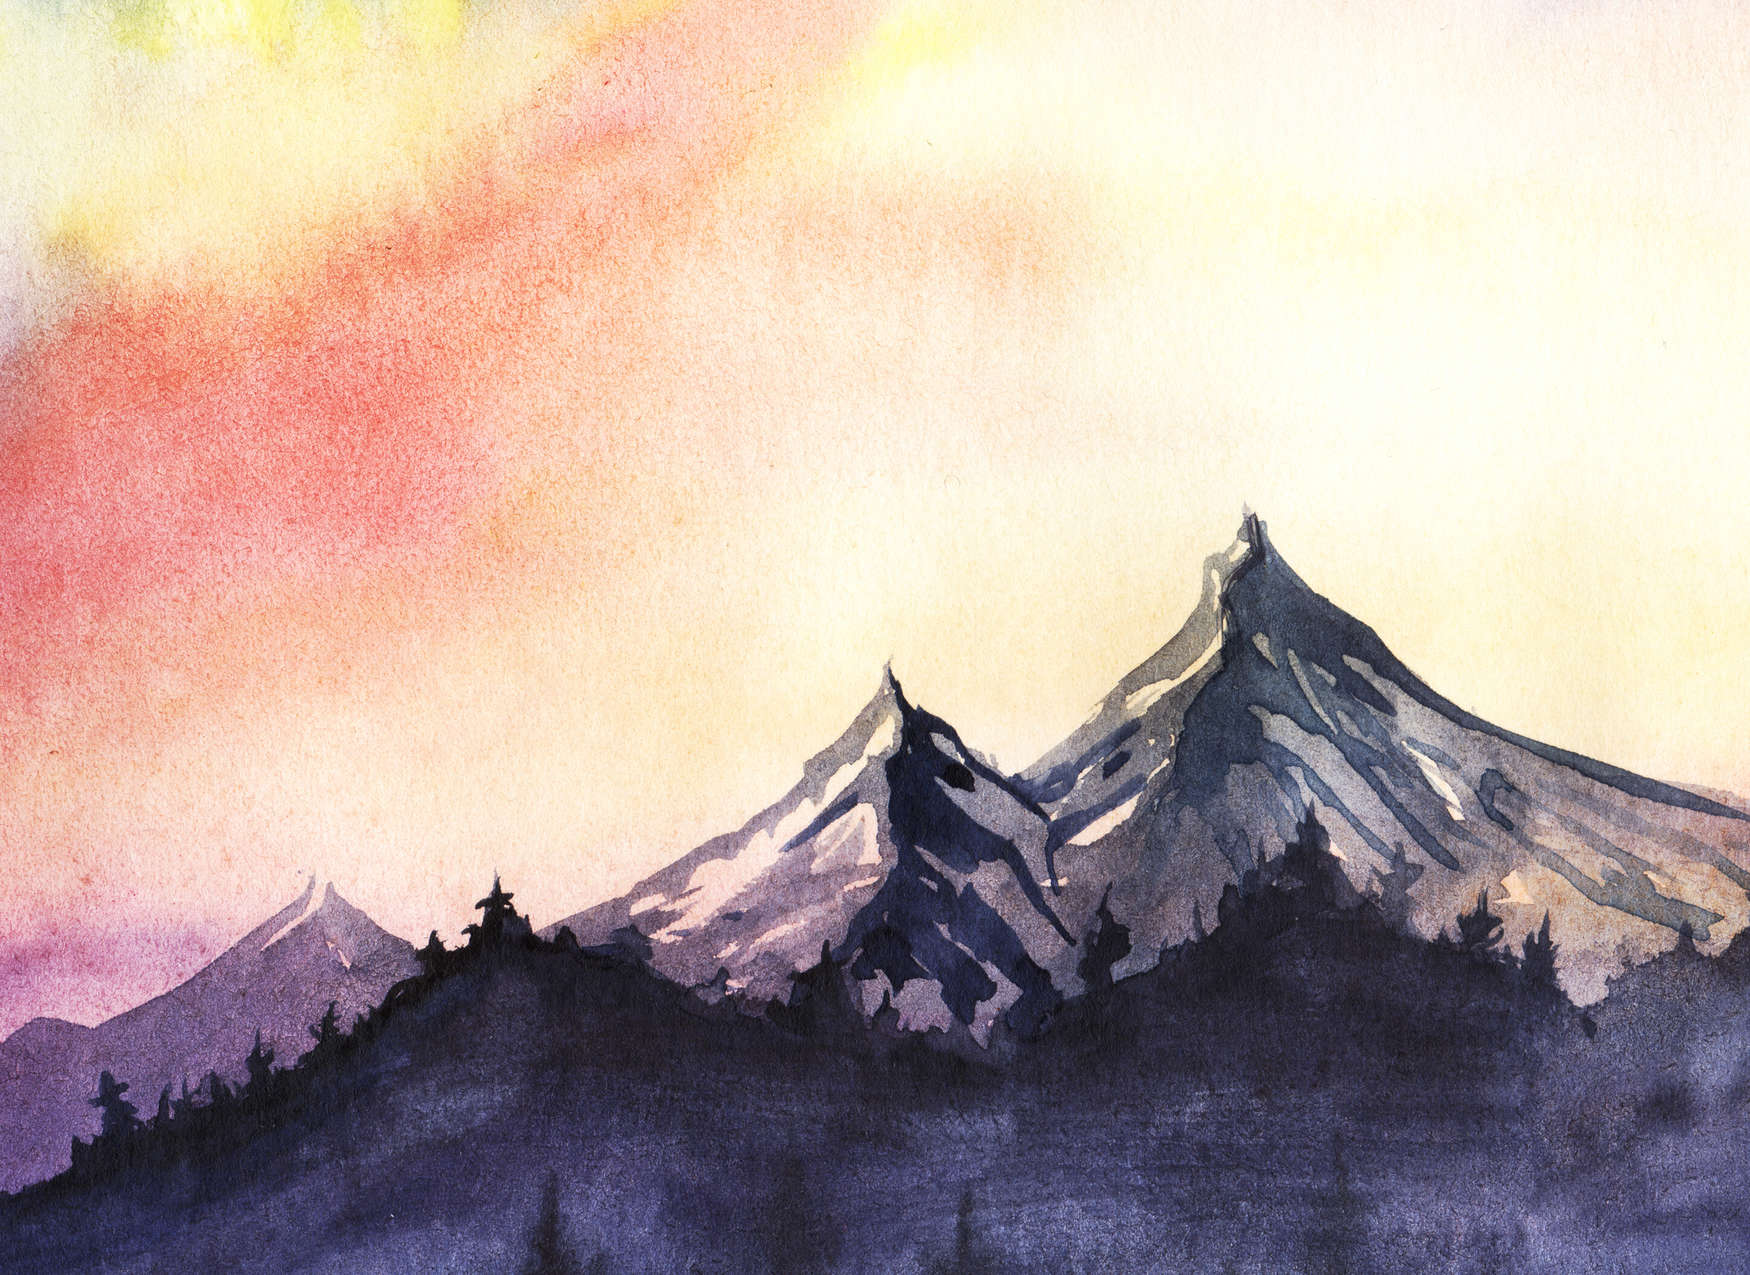             Paysage de montagne de style aquarelle - gris, jaune, rose
        